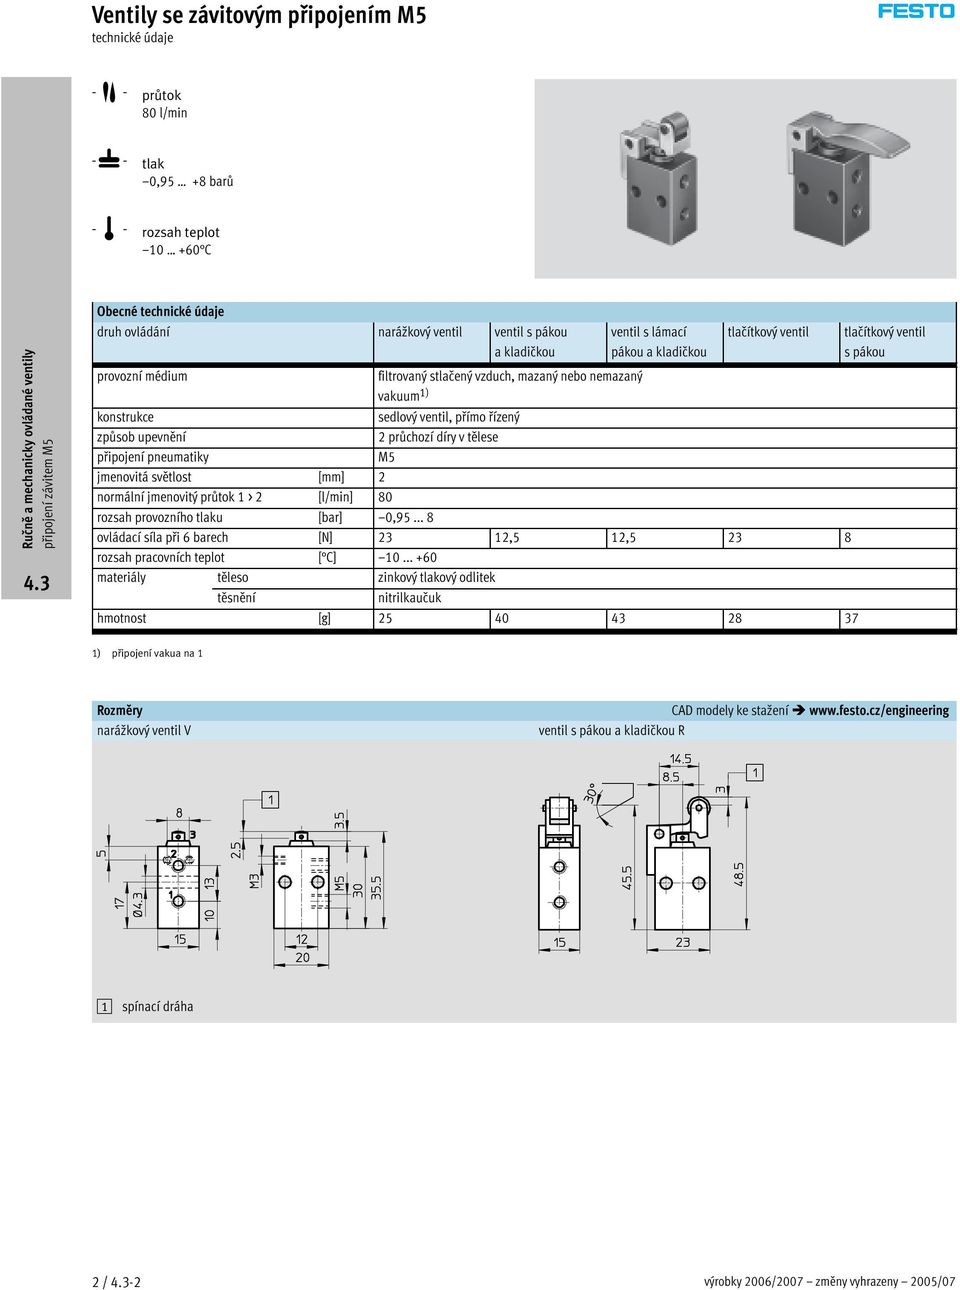 1) konstrukce sedlový ventil, přímo řízený způsob upevnění 2průchozídíryvtělese připojení pneumatiky M5 jmenovitá světlost [mm] 2 normální jmenovitý průtok 1 > 2 [l/min] 80 rozsah provozního tlaku